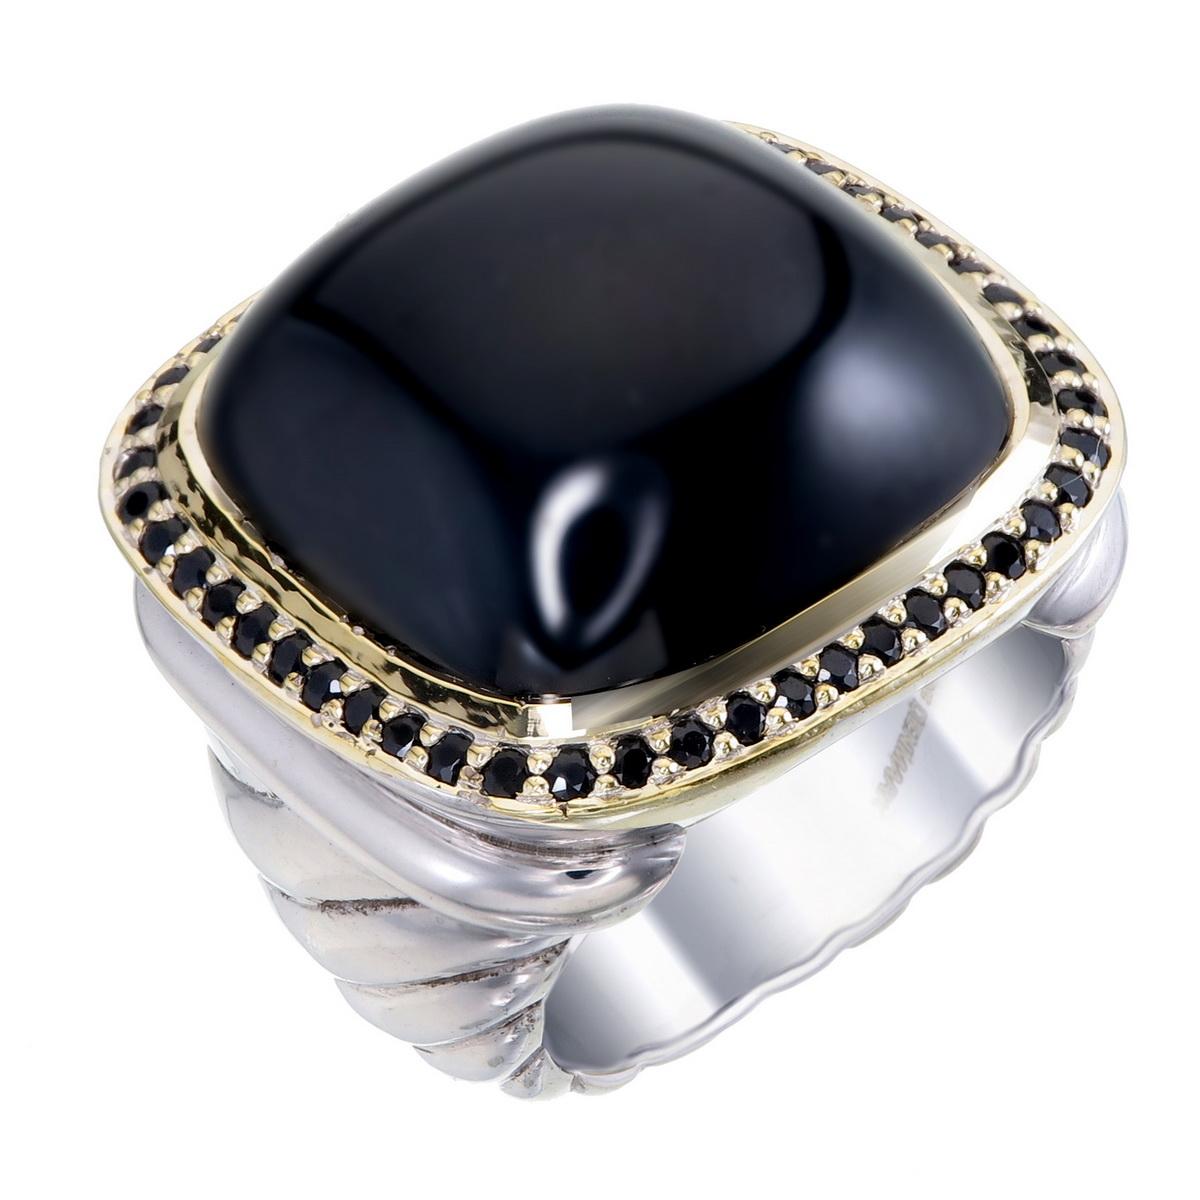 Orloff of Denmark; Statement-Ring aus Sterlingsilber mit insgesamt 0,50 Karat schwarzen Saphiren, die einen großen Onyx umgeben, gefasst in einer 18 Karat vergoldeten Lünette

Dieser Ring ist ein wahrhaft fesselndes Schmuckstück, das Eleganz und